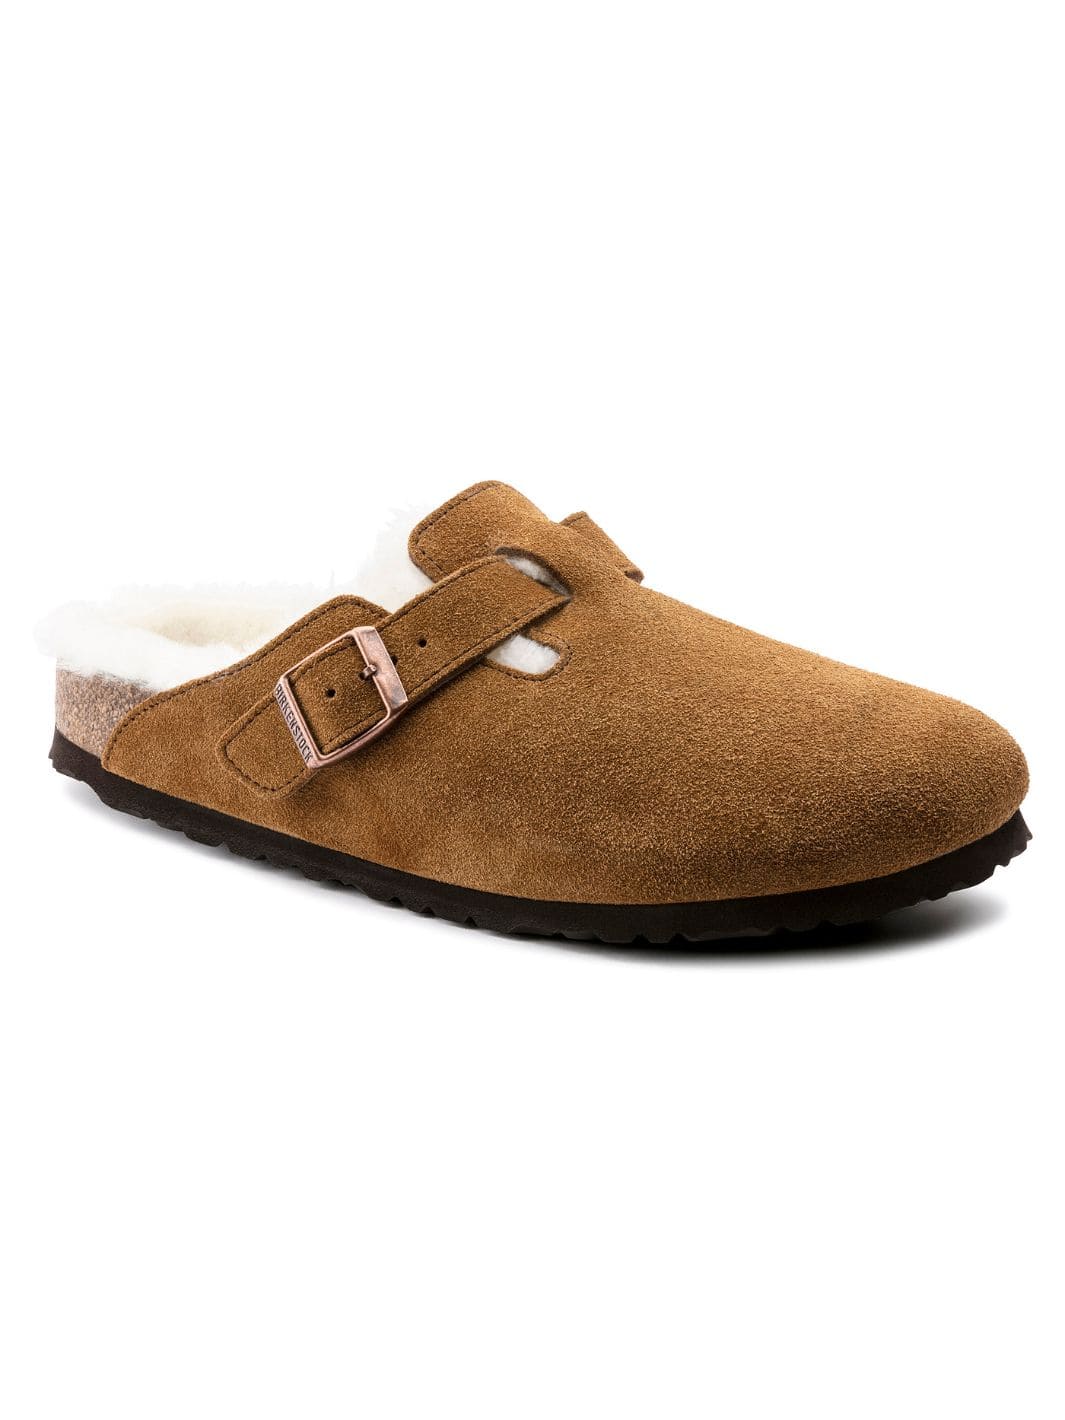 Birkenstock Shoes Slip-On | Boston Shearling Suede Leather Mink